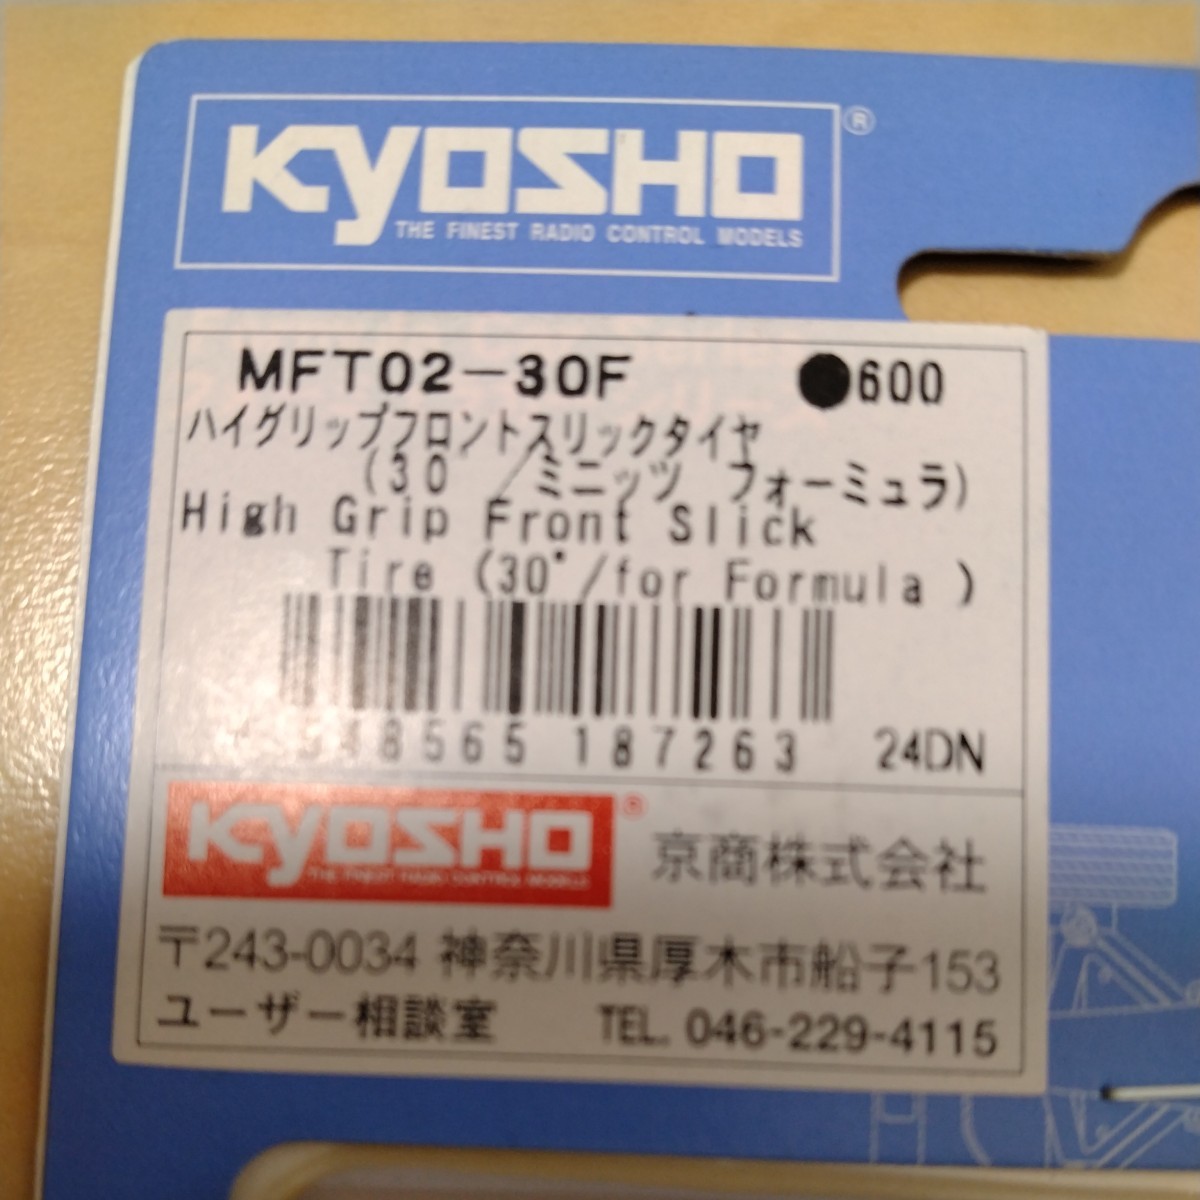 京商 ミニッツ フォーミュラ MFT02-30F ハイグリップフロントスリックタイヤ 30°　Mini-z Formula F1_画像2